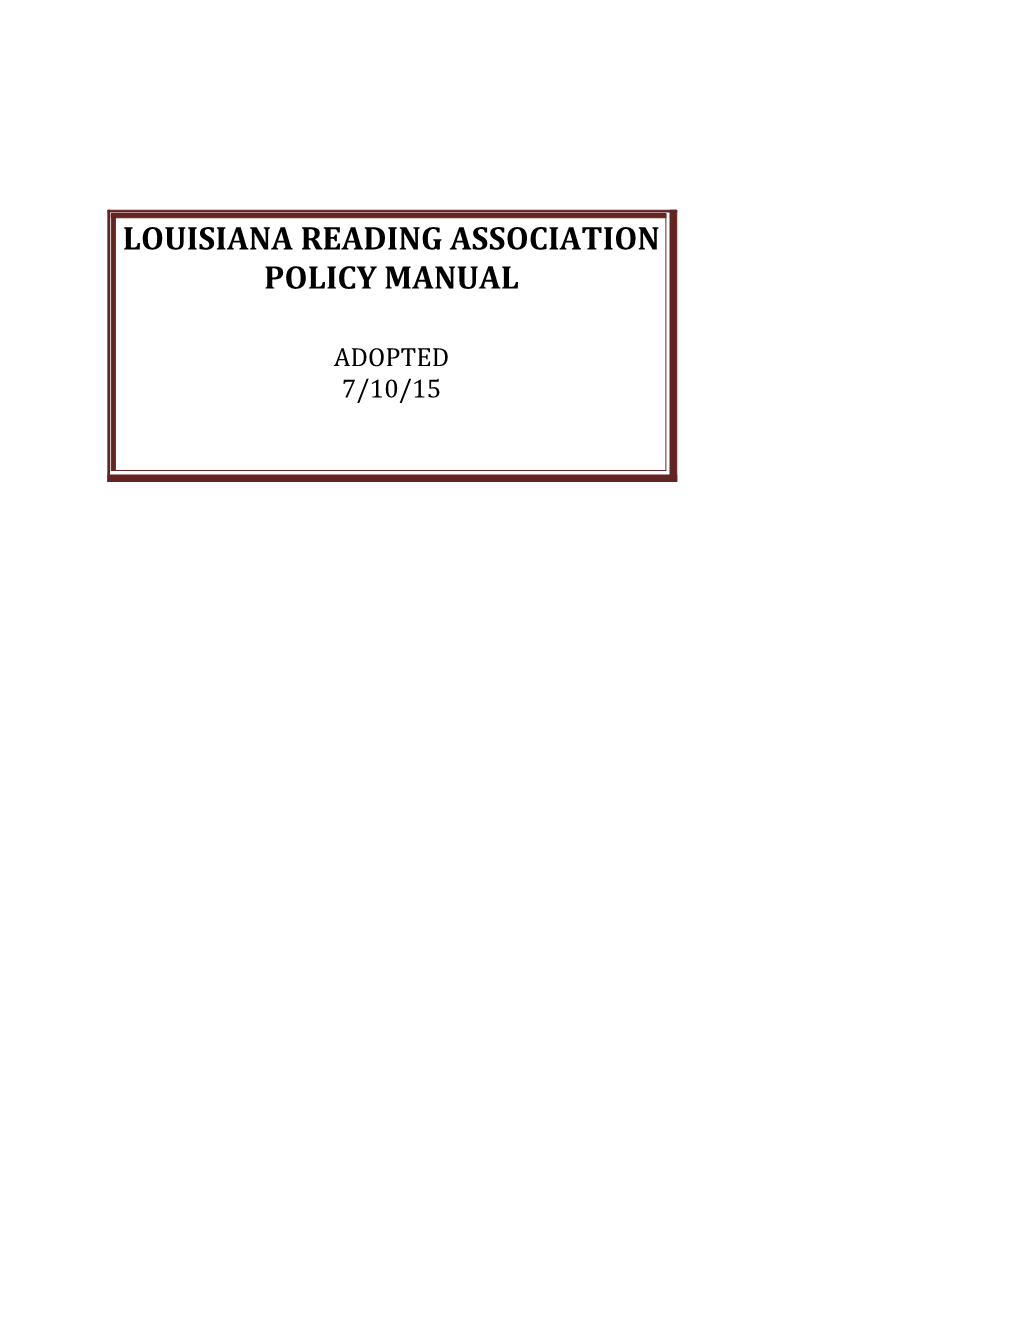 Louisiana Reading Association Policy Manual